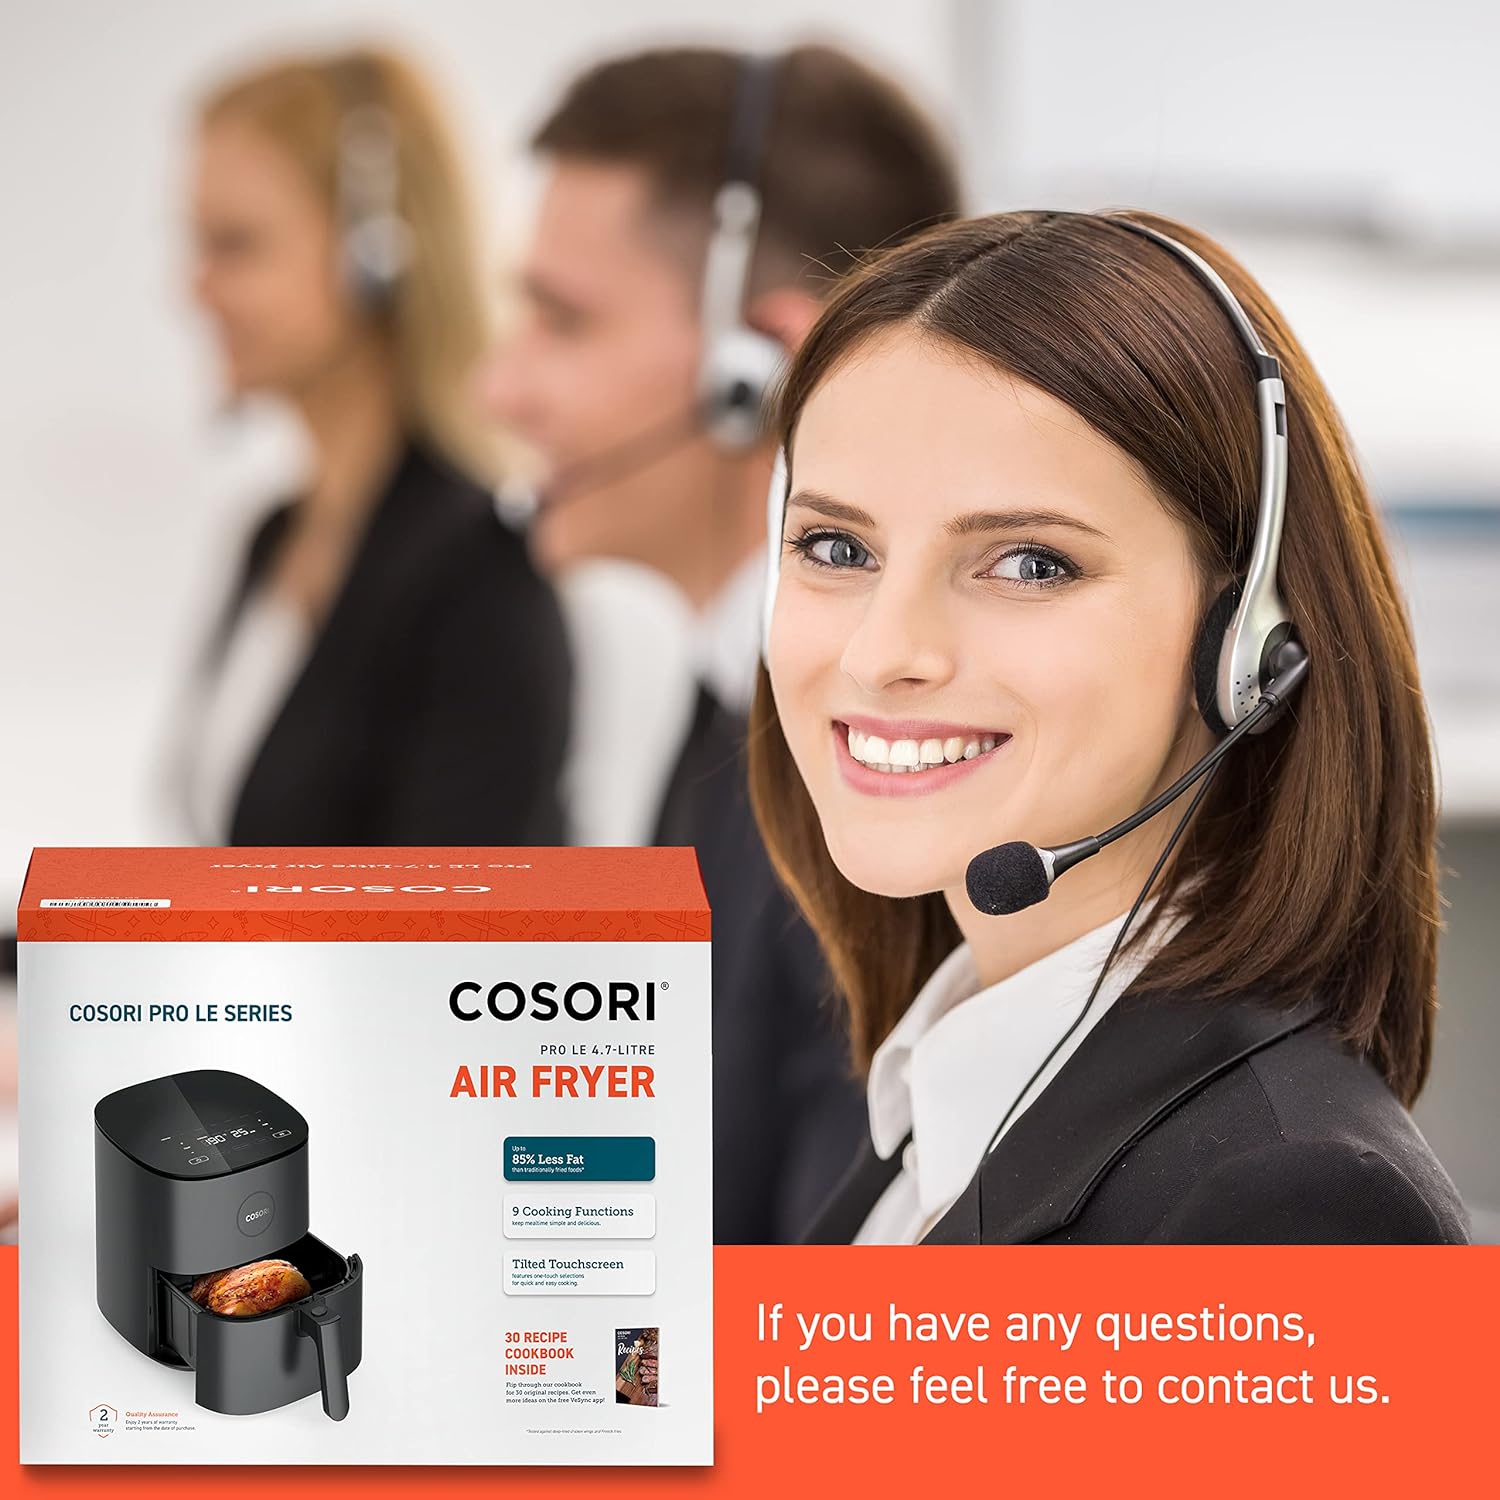 سرخکن بدون روغن برند Cosori آمریکا با ظرفیت 4.7 لیتر